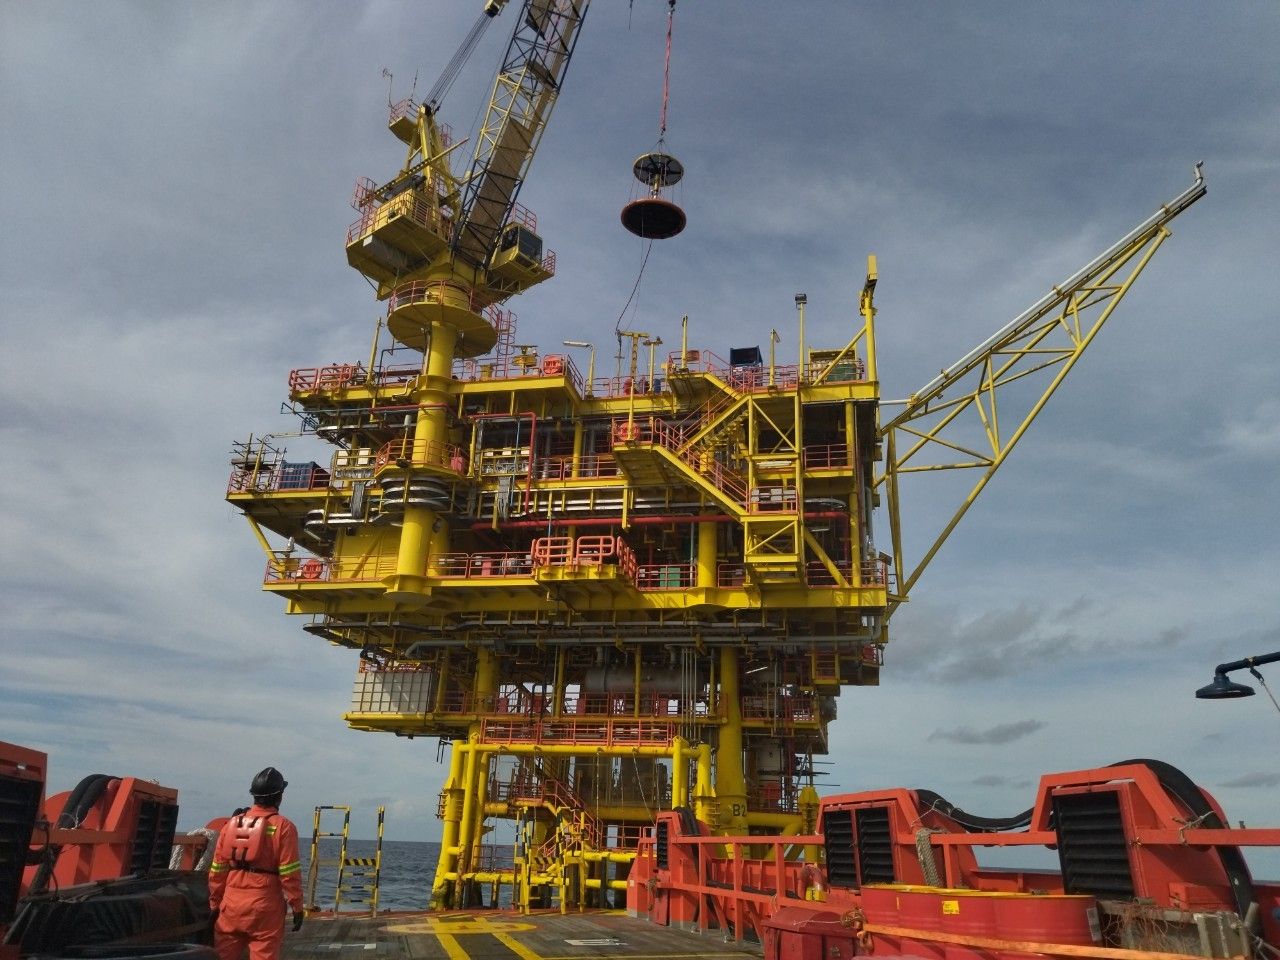 Tập đoàn Dầu khí Quốc gia phát hiện 2 mỏ dầu khí mới trữ lượng hàng chục triệu thùng- Ảnh 2.